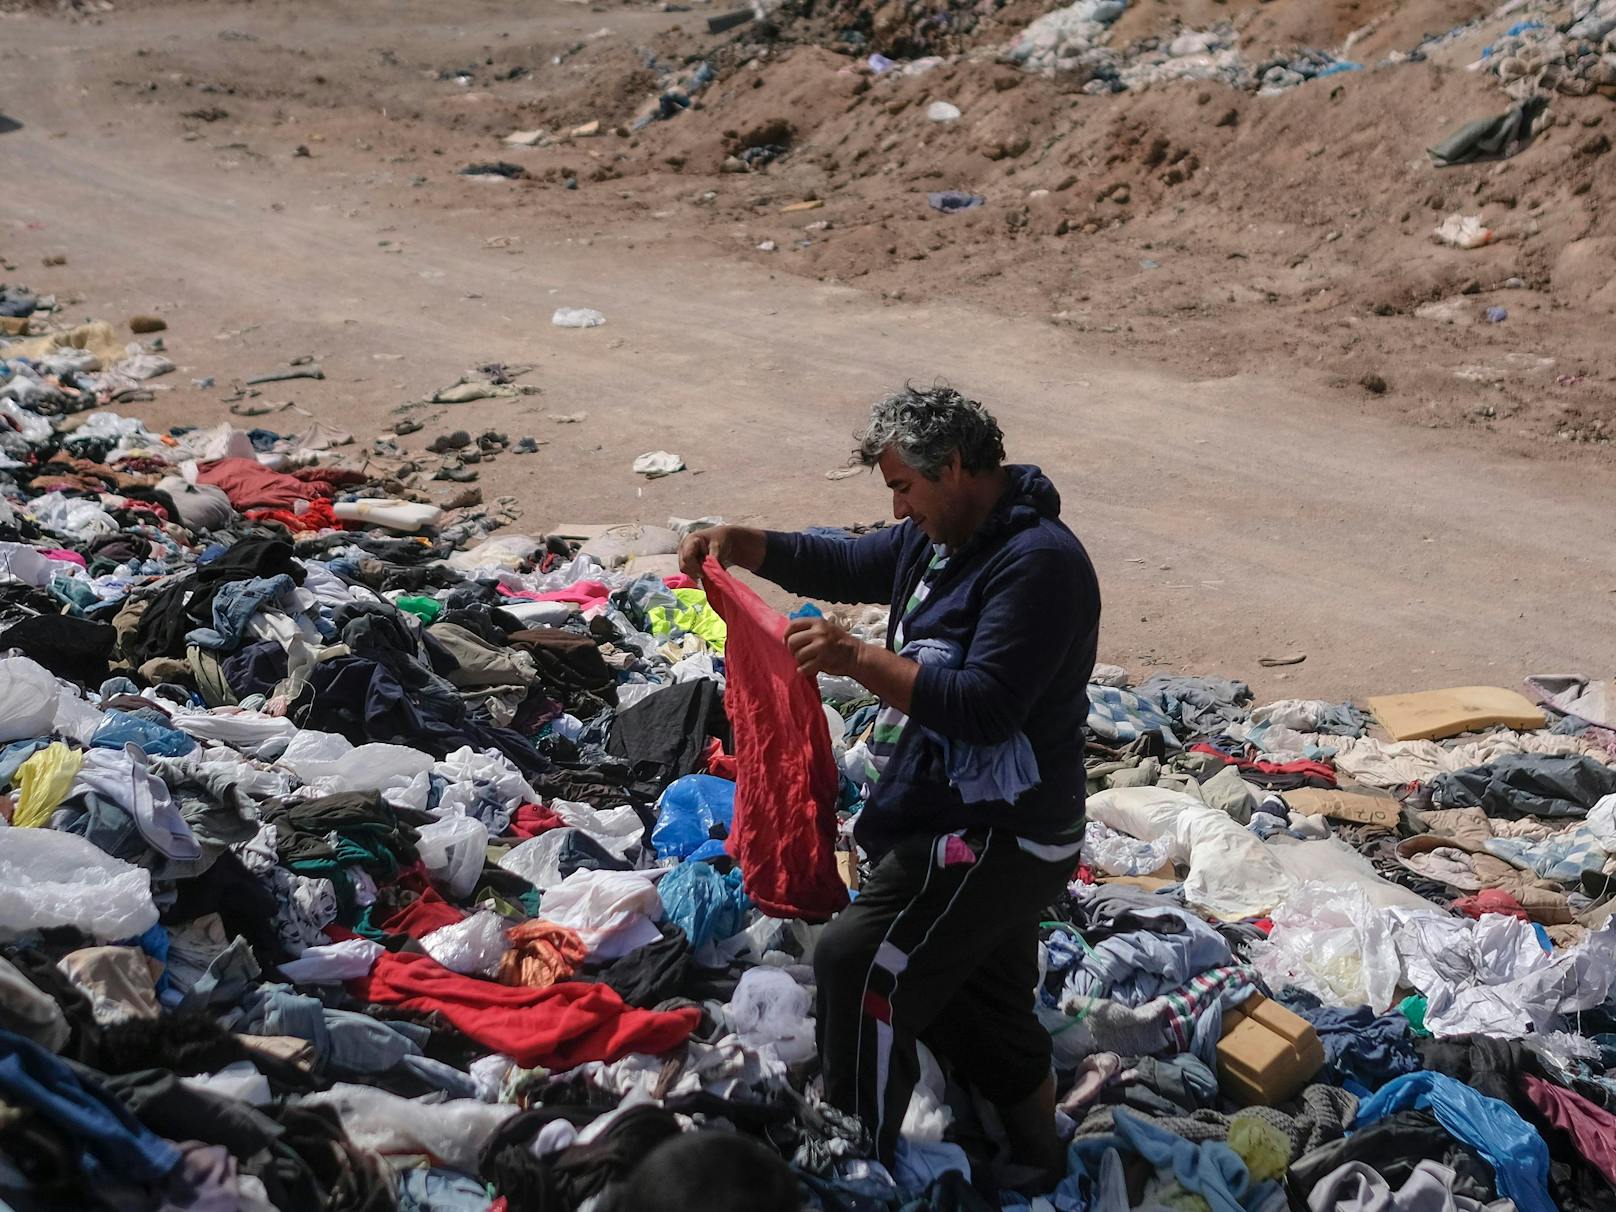 Auch nie getragene Kleidungsstücke sind hier zu finden, teils wertvolle Stoffe einfach achtlos weggeworfen. "Auswüchse unserer Wegwerfgesellschaft und der Fast-Fashion-Industrie", kritisiert Greenpeace.